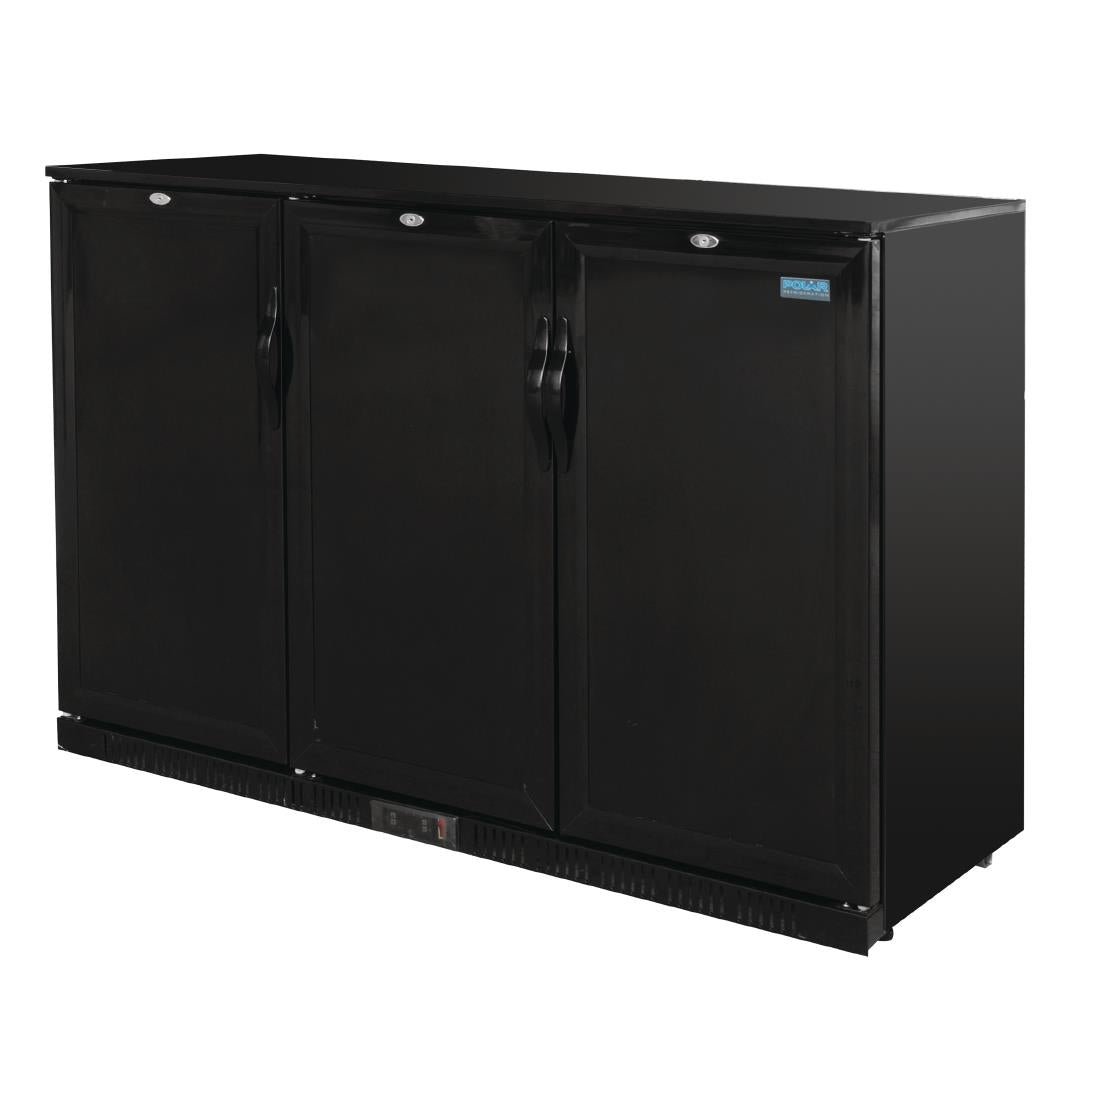 GL017 Polar G-Series 900mm Triple Solid Door Back Bar Cooler in Black 330Ltr GL017